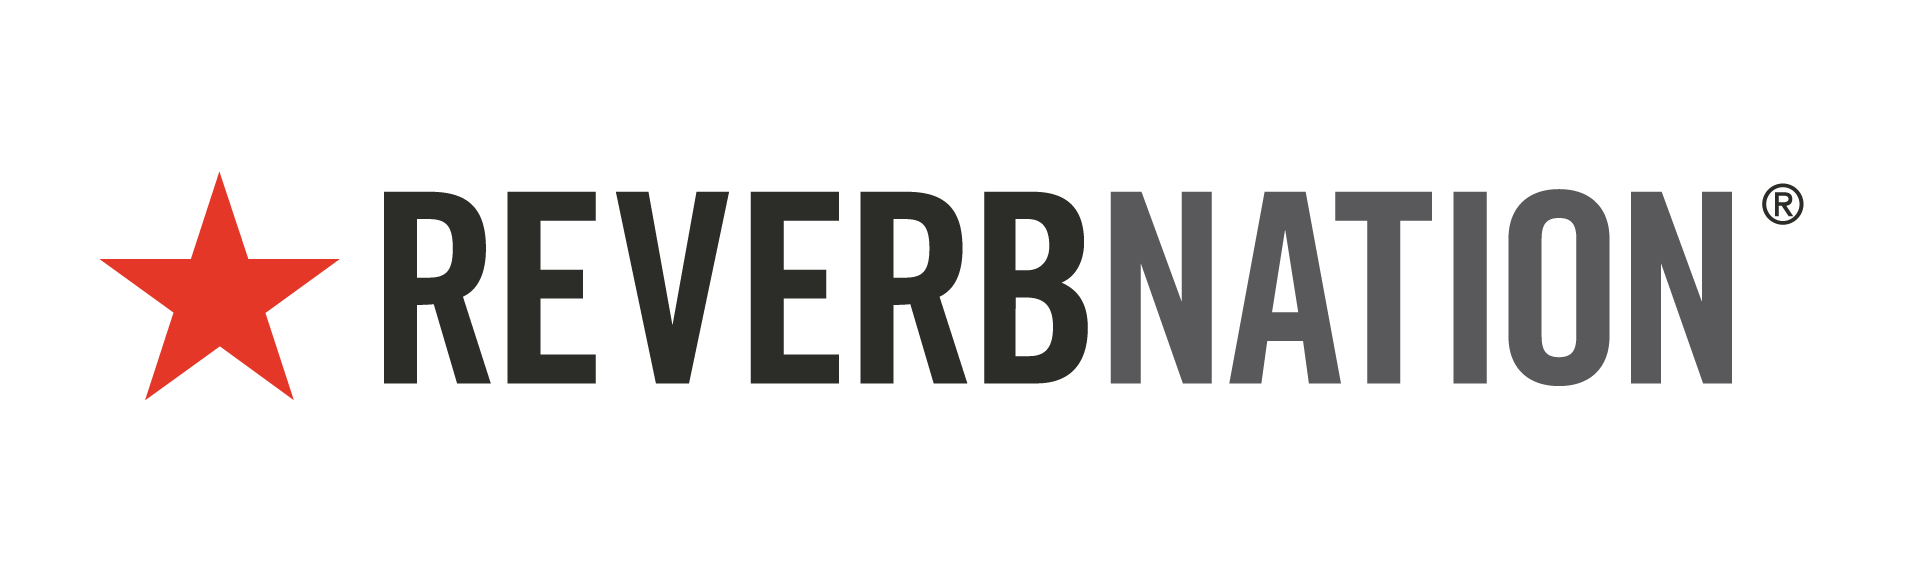 reverbnation-logo-white